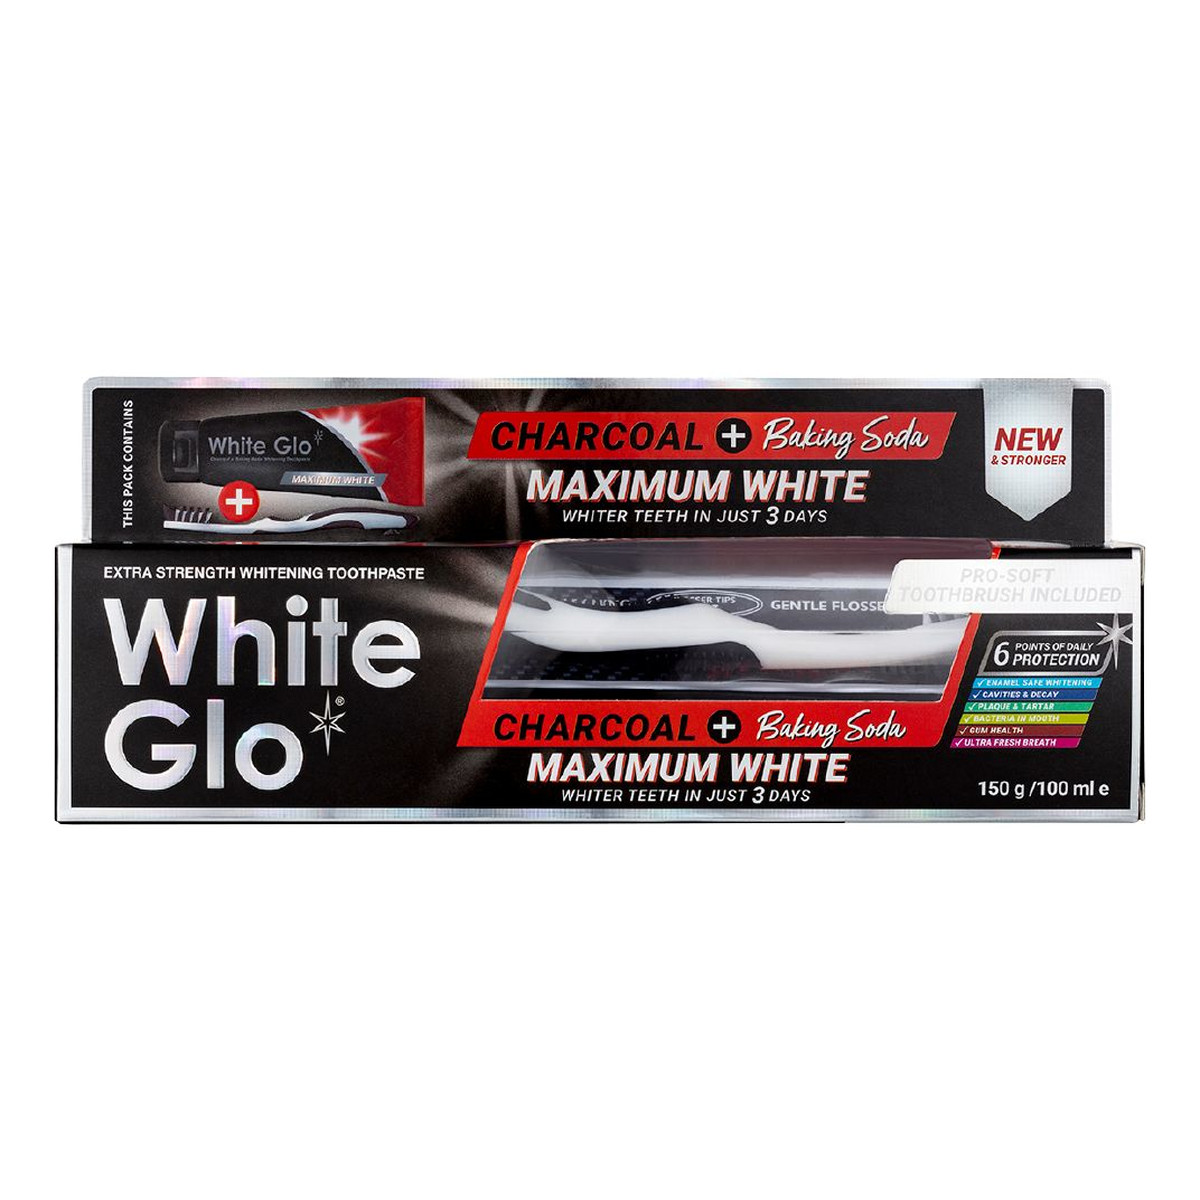 White Glo Charcoal + baking soda maximum white toothpaste wybielająca pasta do zębów 150g/100ml + szczoteczka